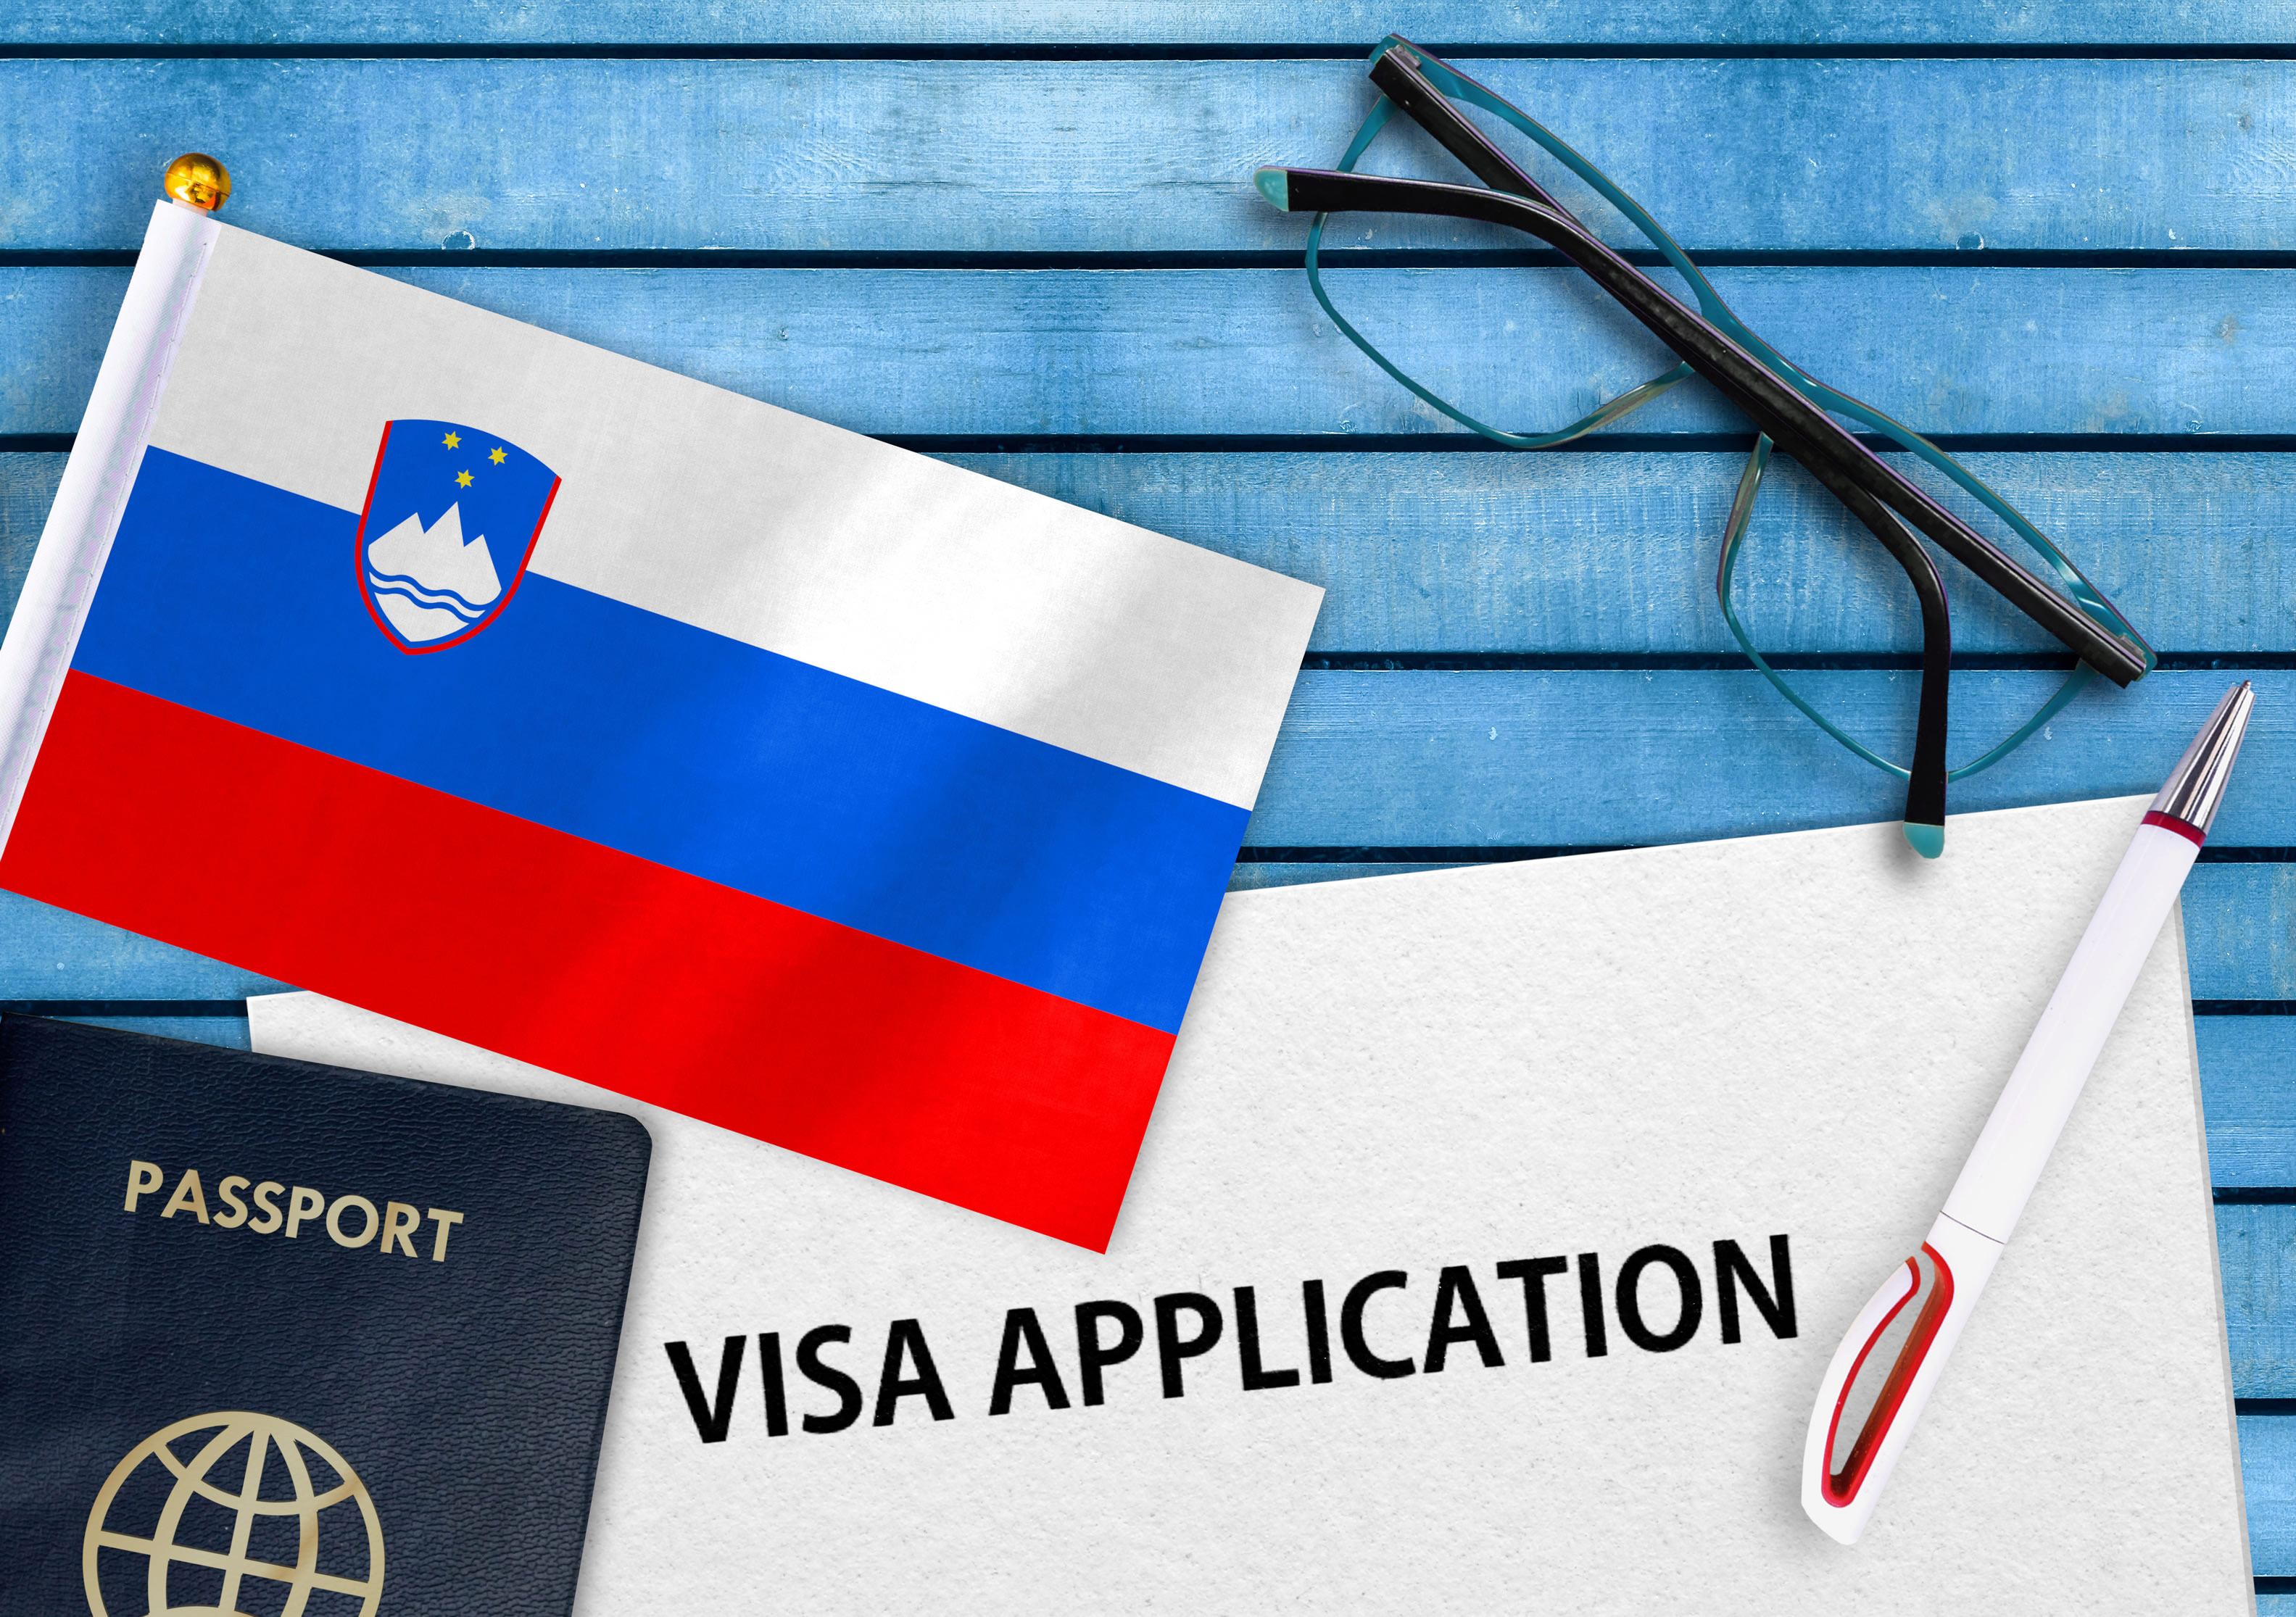 Словенская виза, необходимая иностранцам для работы в стране